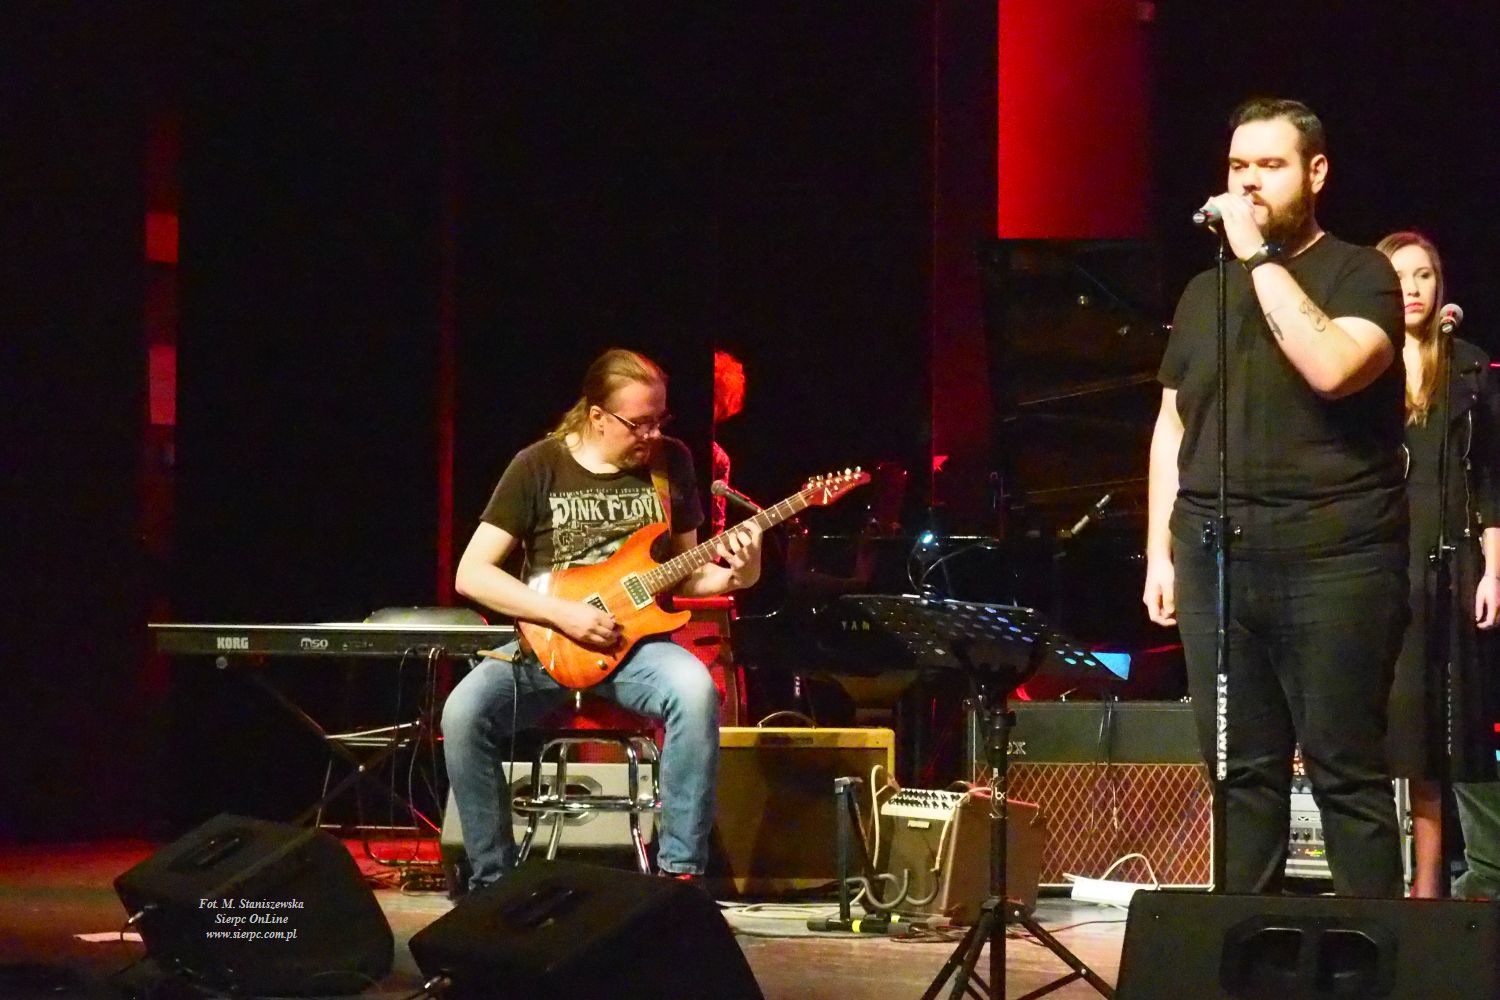 Do wykonania następnego utworu zaproszony został znów Mateusz Zabłocki. Na scenie towarzyszył mu Andrzej Kamiński, tym razem jako gitarzysta.